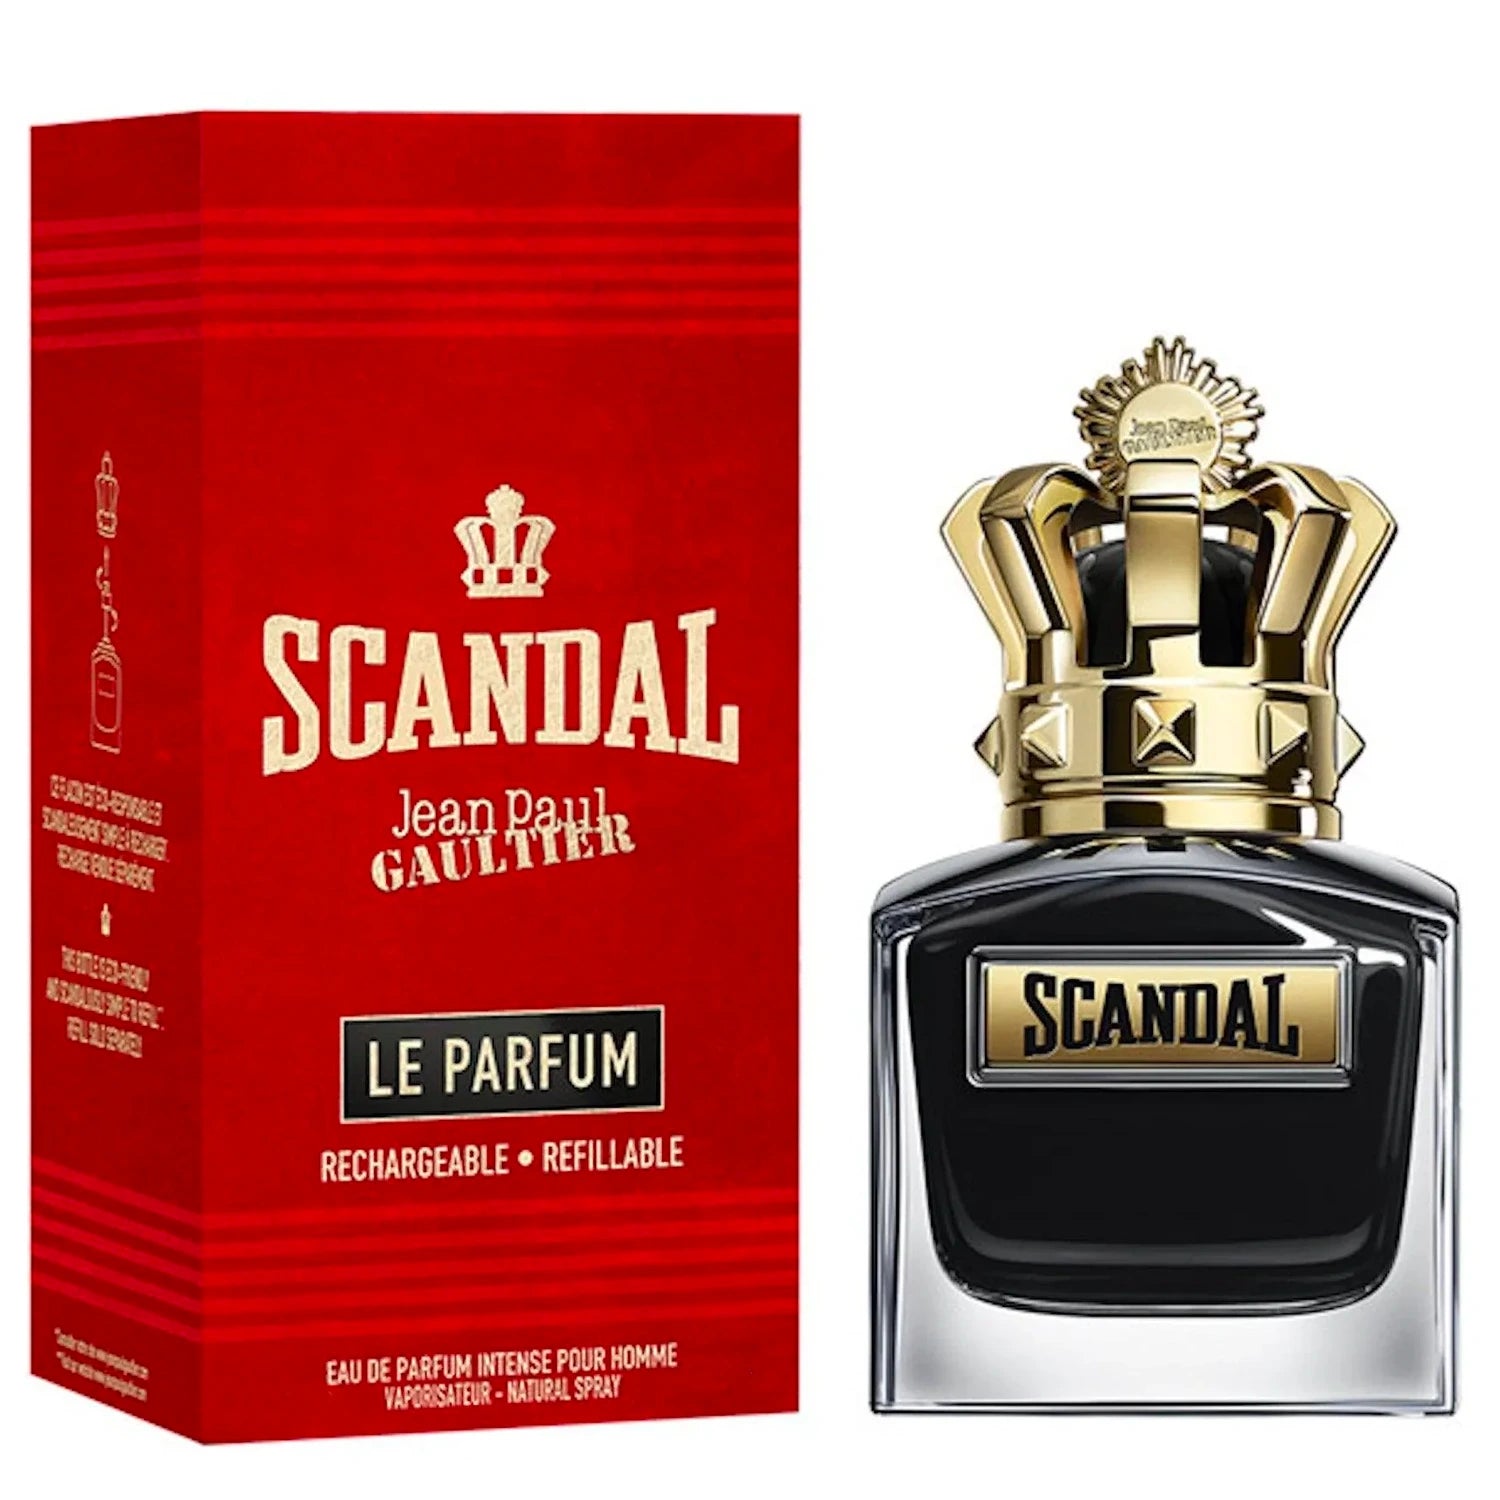 Buy Jean Paul Gaultier La Belle Eau de Parfum 50ml · Jordan